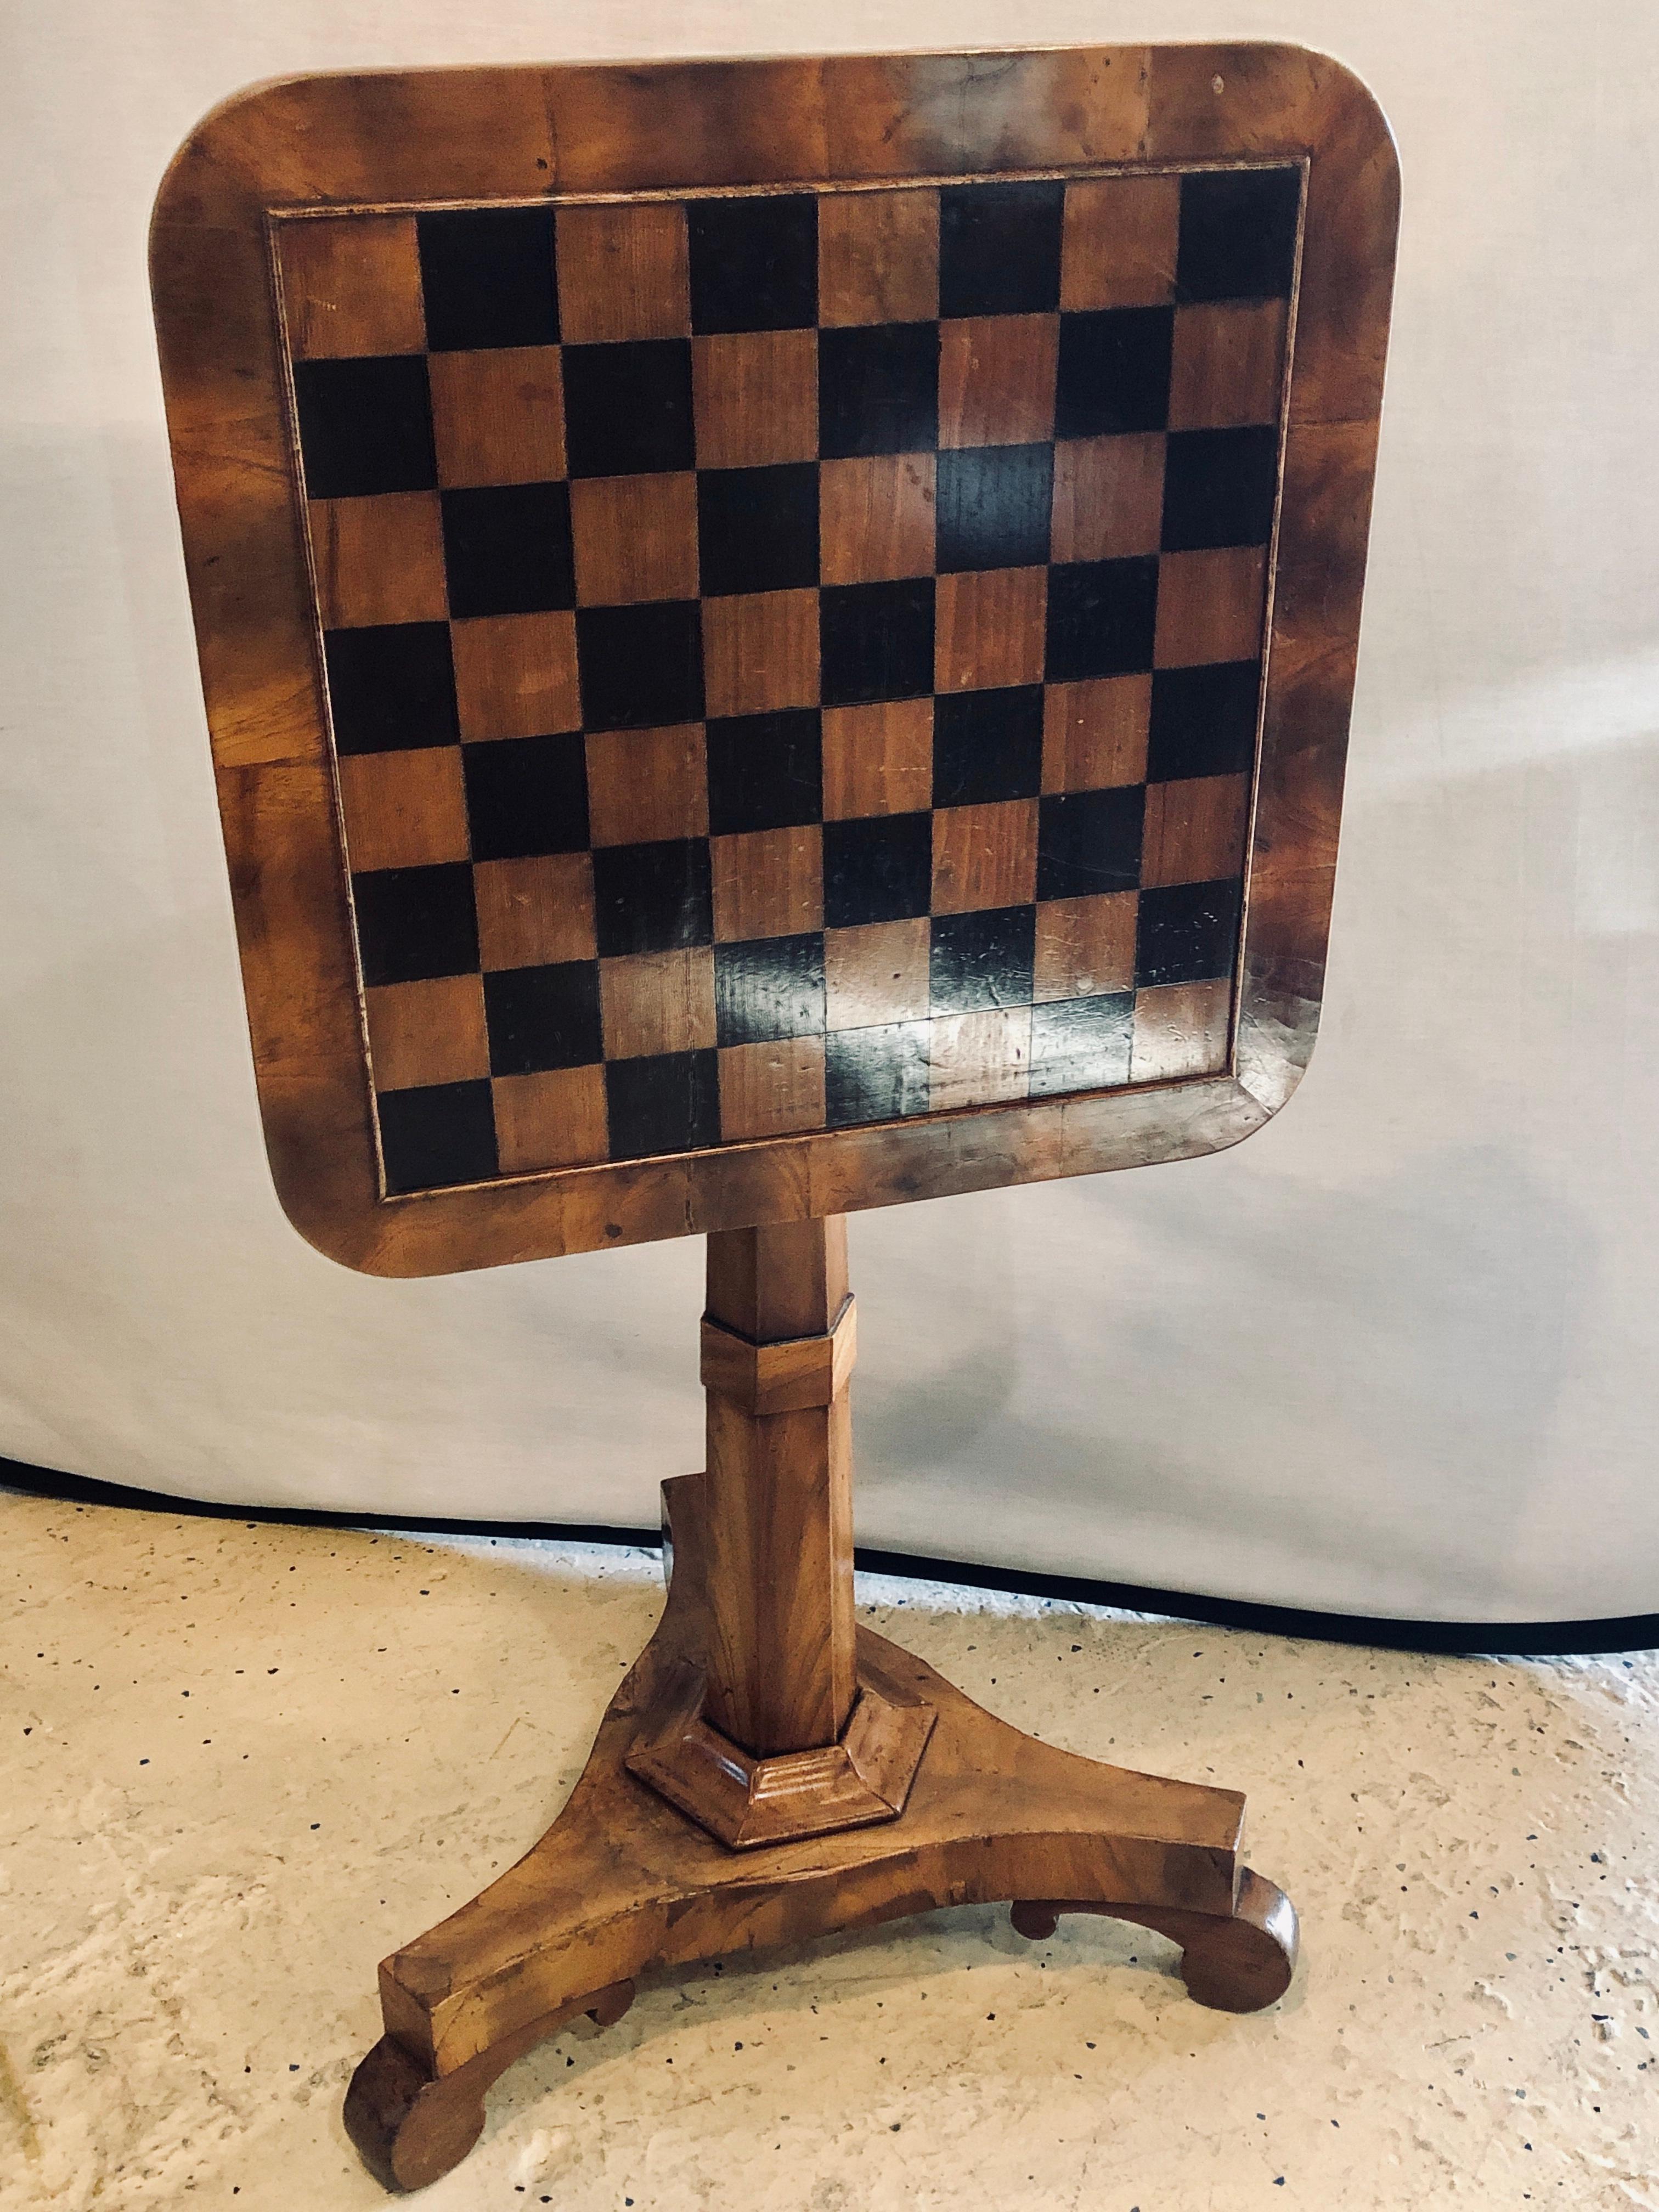 Ein englischer Kipptisch aus dem 19. Jahrhundert für ein Schachbrett oder einen Kartentisch. Dieser Flip-Top-Spieltisch mit einem Sockel steht auf einem Tri-Pod-Fuß und ist funktional und einfach zu bedienen.